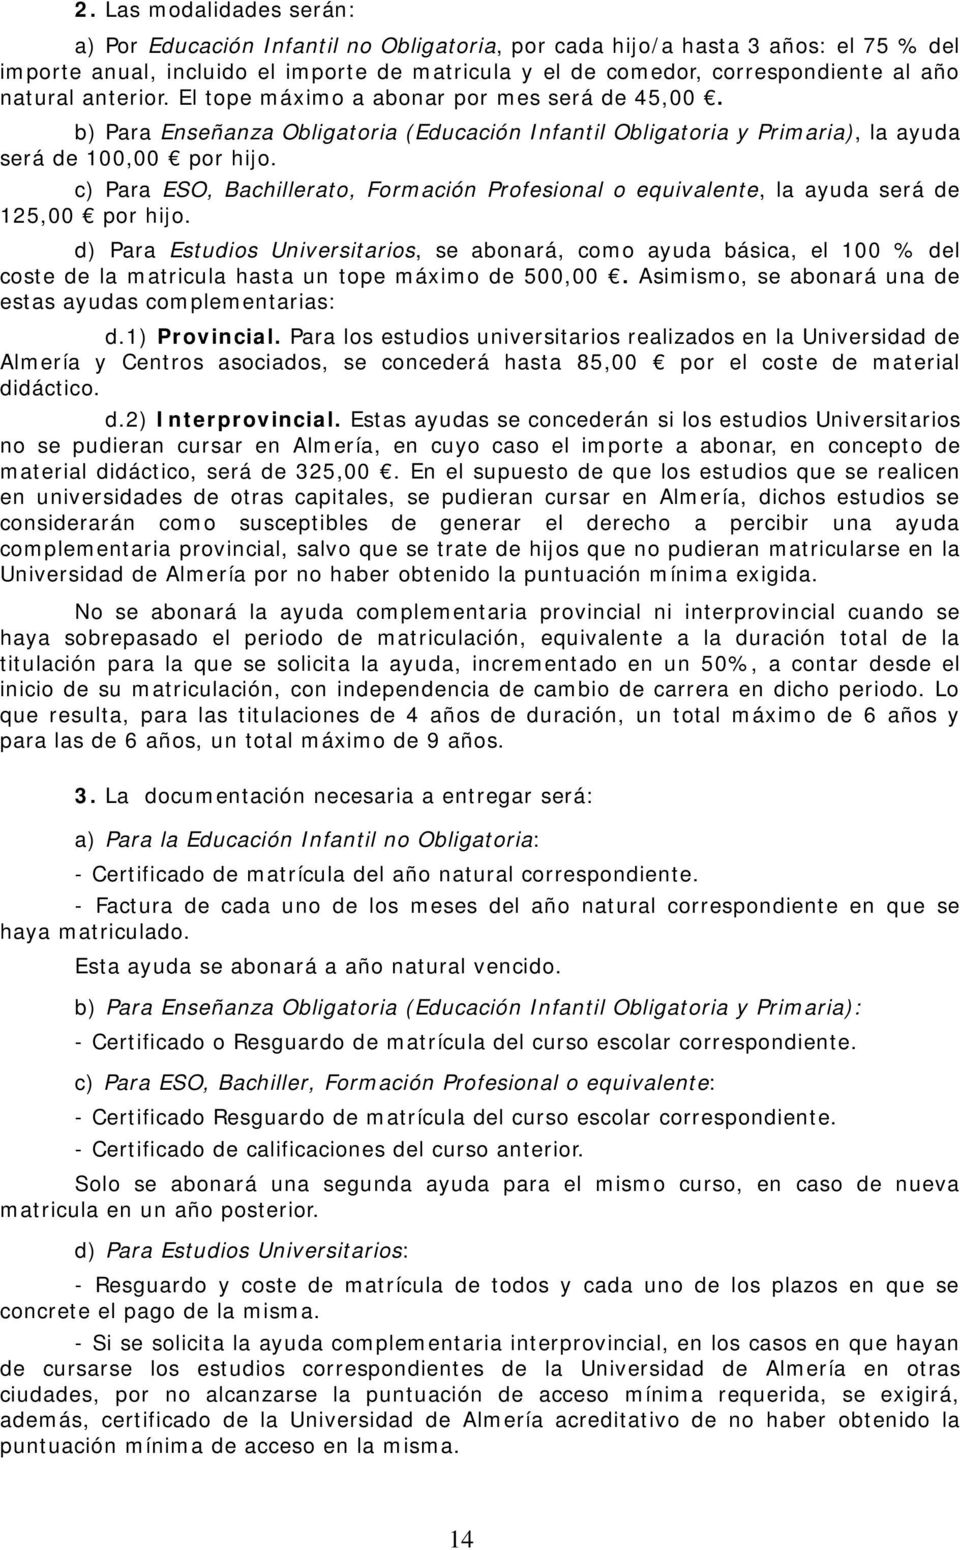 c) Para ESO, Bachillerato, Formación Profesional o equivalente, la ayuda será de 125,00 por hijo.